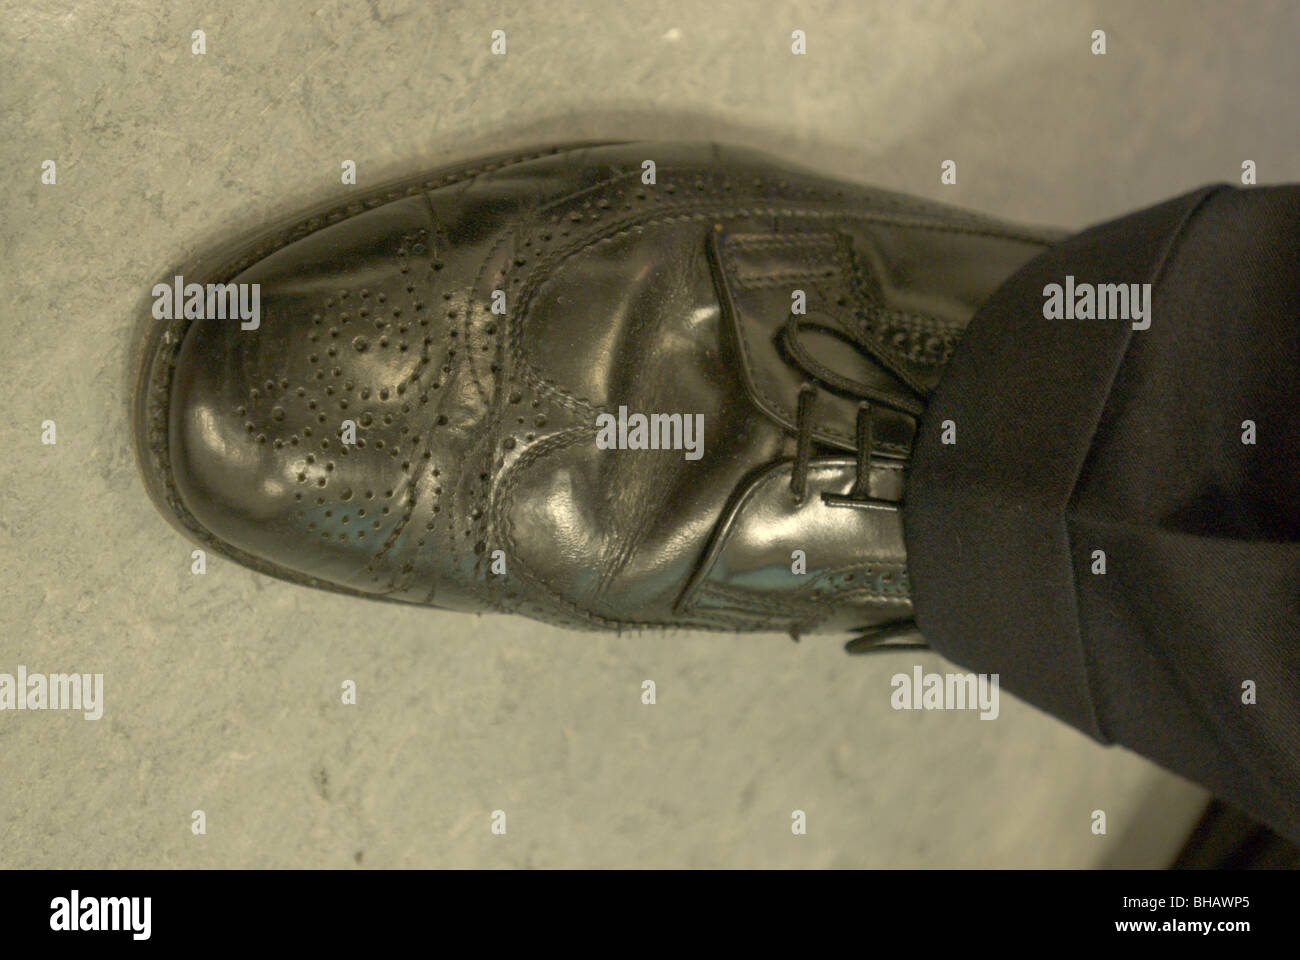 Ses chaussures avant de la lumière UV présente des gouttelettes d'eau intelligente Banque D'Images